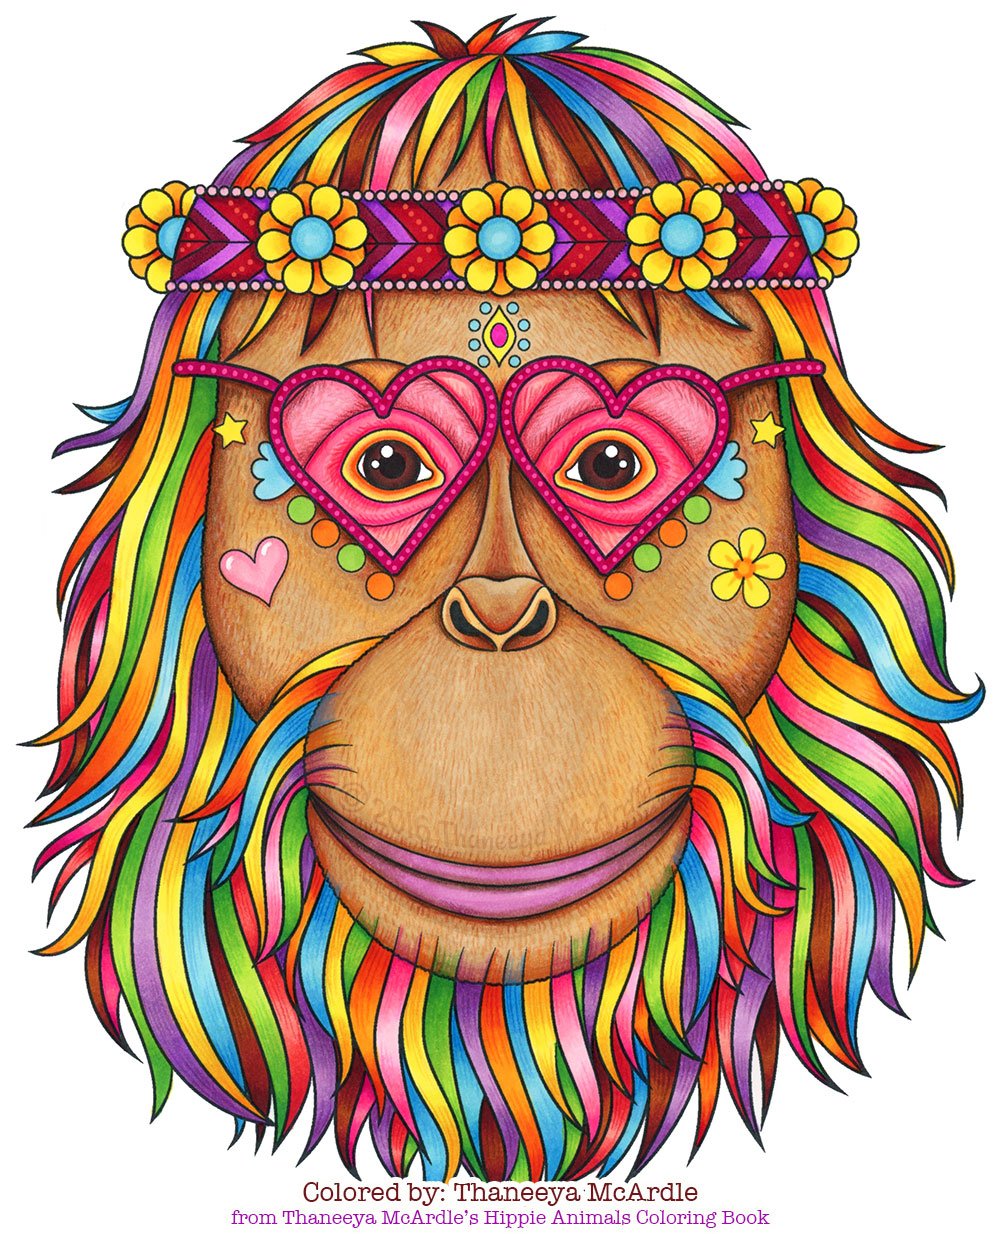 https://images.squarespace-cdn.com/content/v1/5511fc7ce4b0a3782aa9418b/1674164420991-YQIQ6VI0PTE590008JZ6/hippie-orangutan-coloring-page-by-thaneeya.jpg